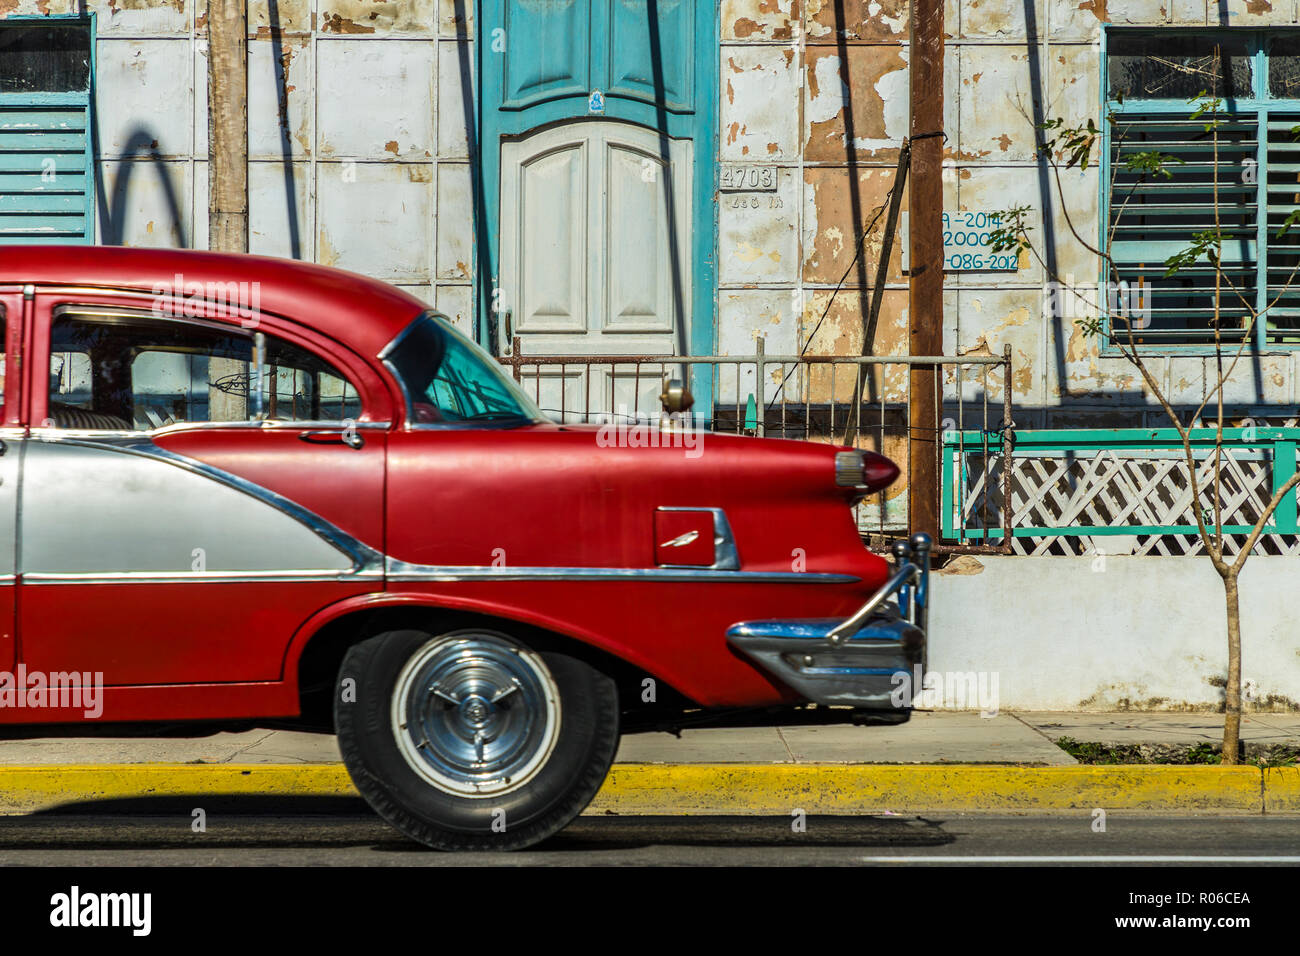 Une voiture américaine classique passé un vieux bâtiment à Varadero, Cuba, Antilles, Caraïbes, Amérique Centrale Banque D'Images